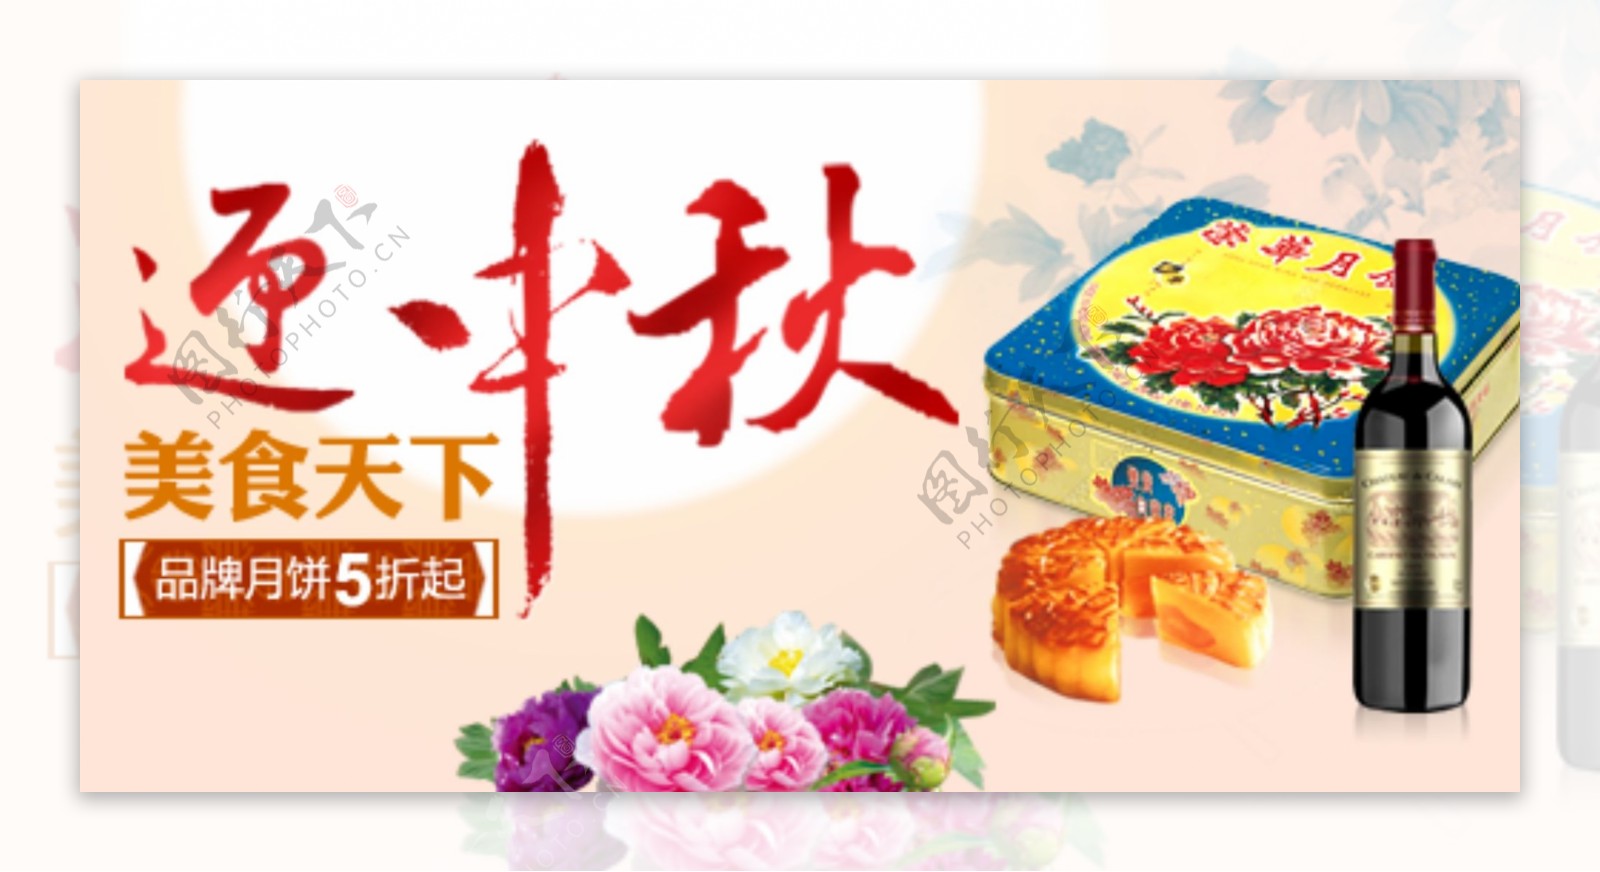 中秋节促销广告设计稿